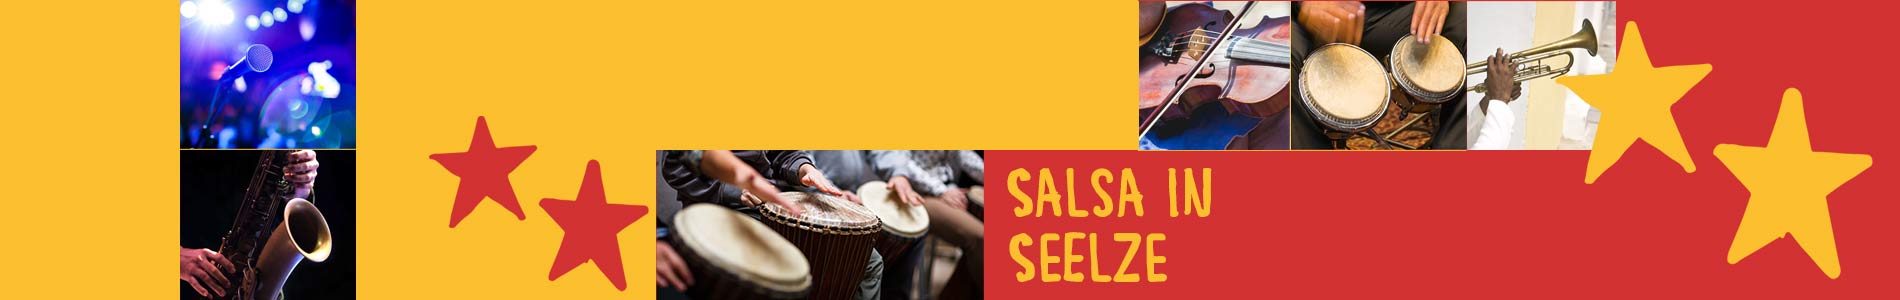 Salsa in Seelze – Salsa lernen und tanzen, Tanzkurse, Partys, Veranstaltungen